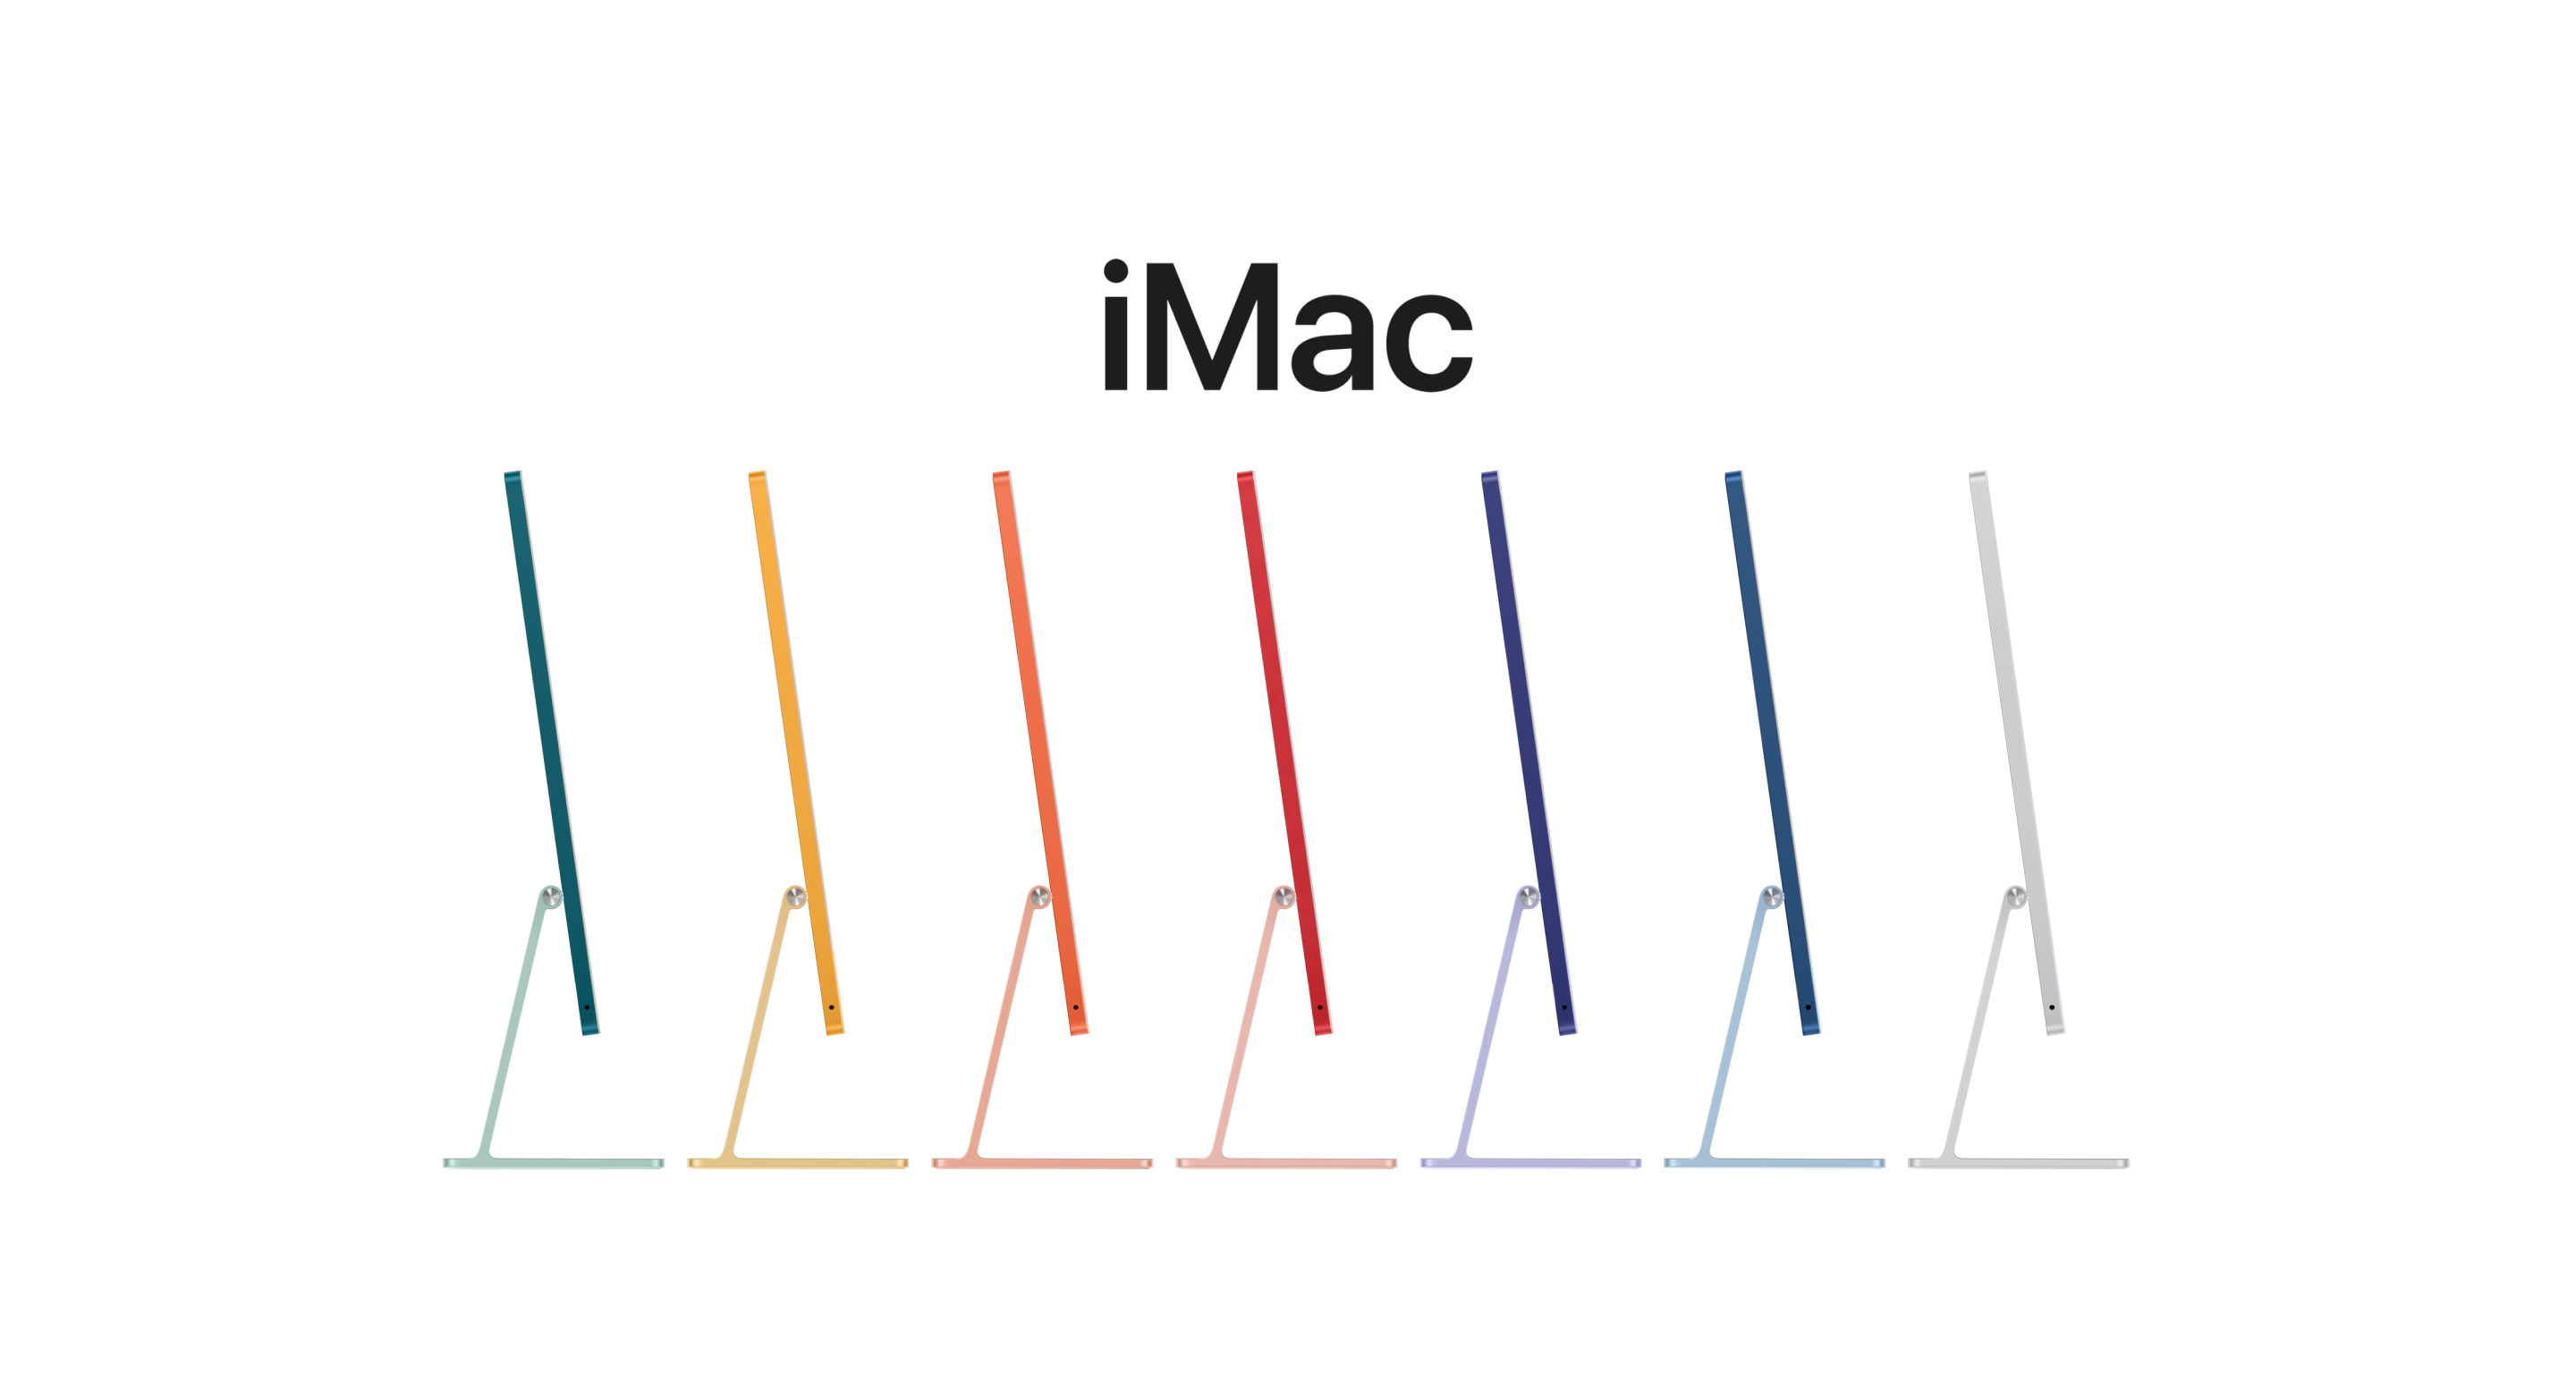 動畫展示 iMac 的全系列七款顏色